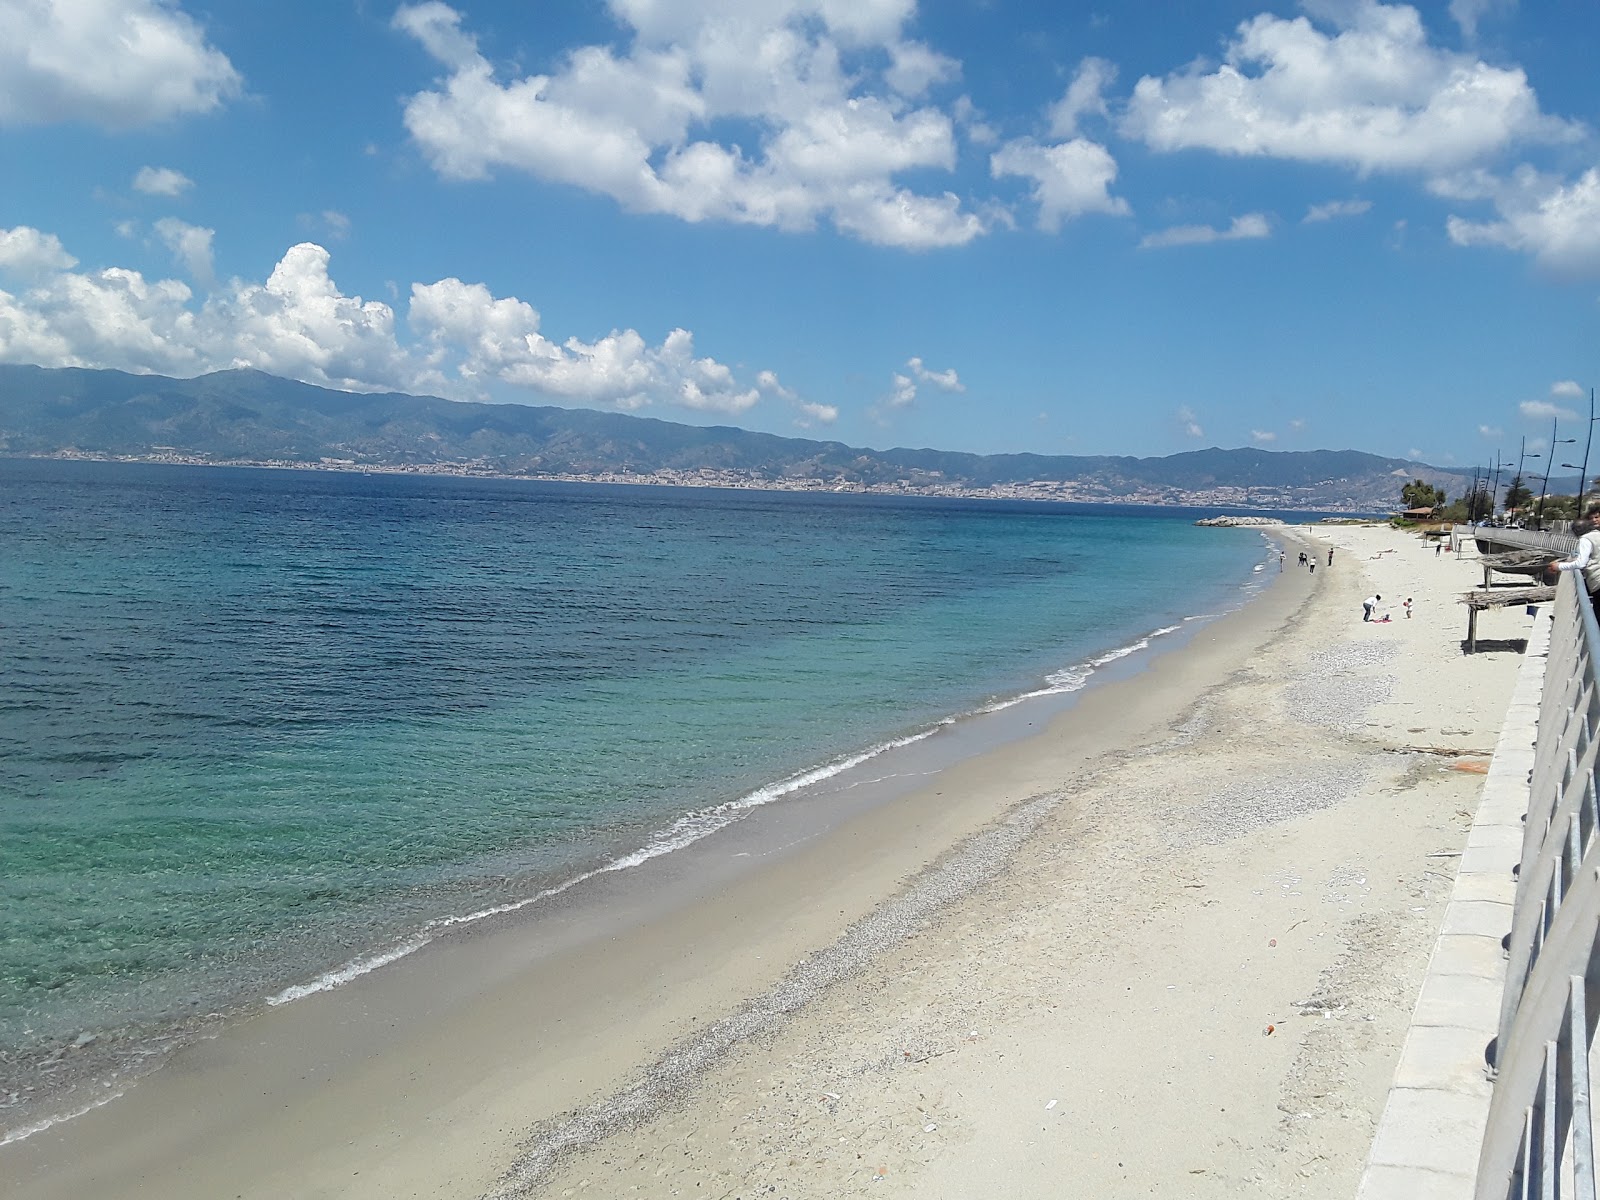 Fotografie cu Gallico Marina cu o suprafață de nisip maro